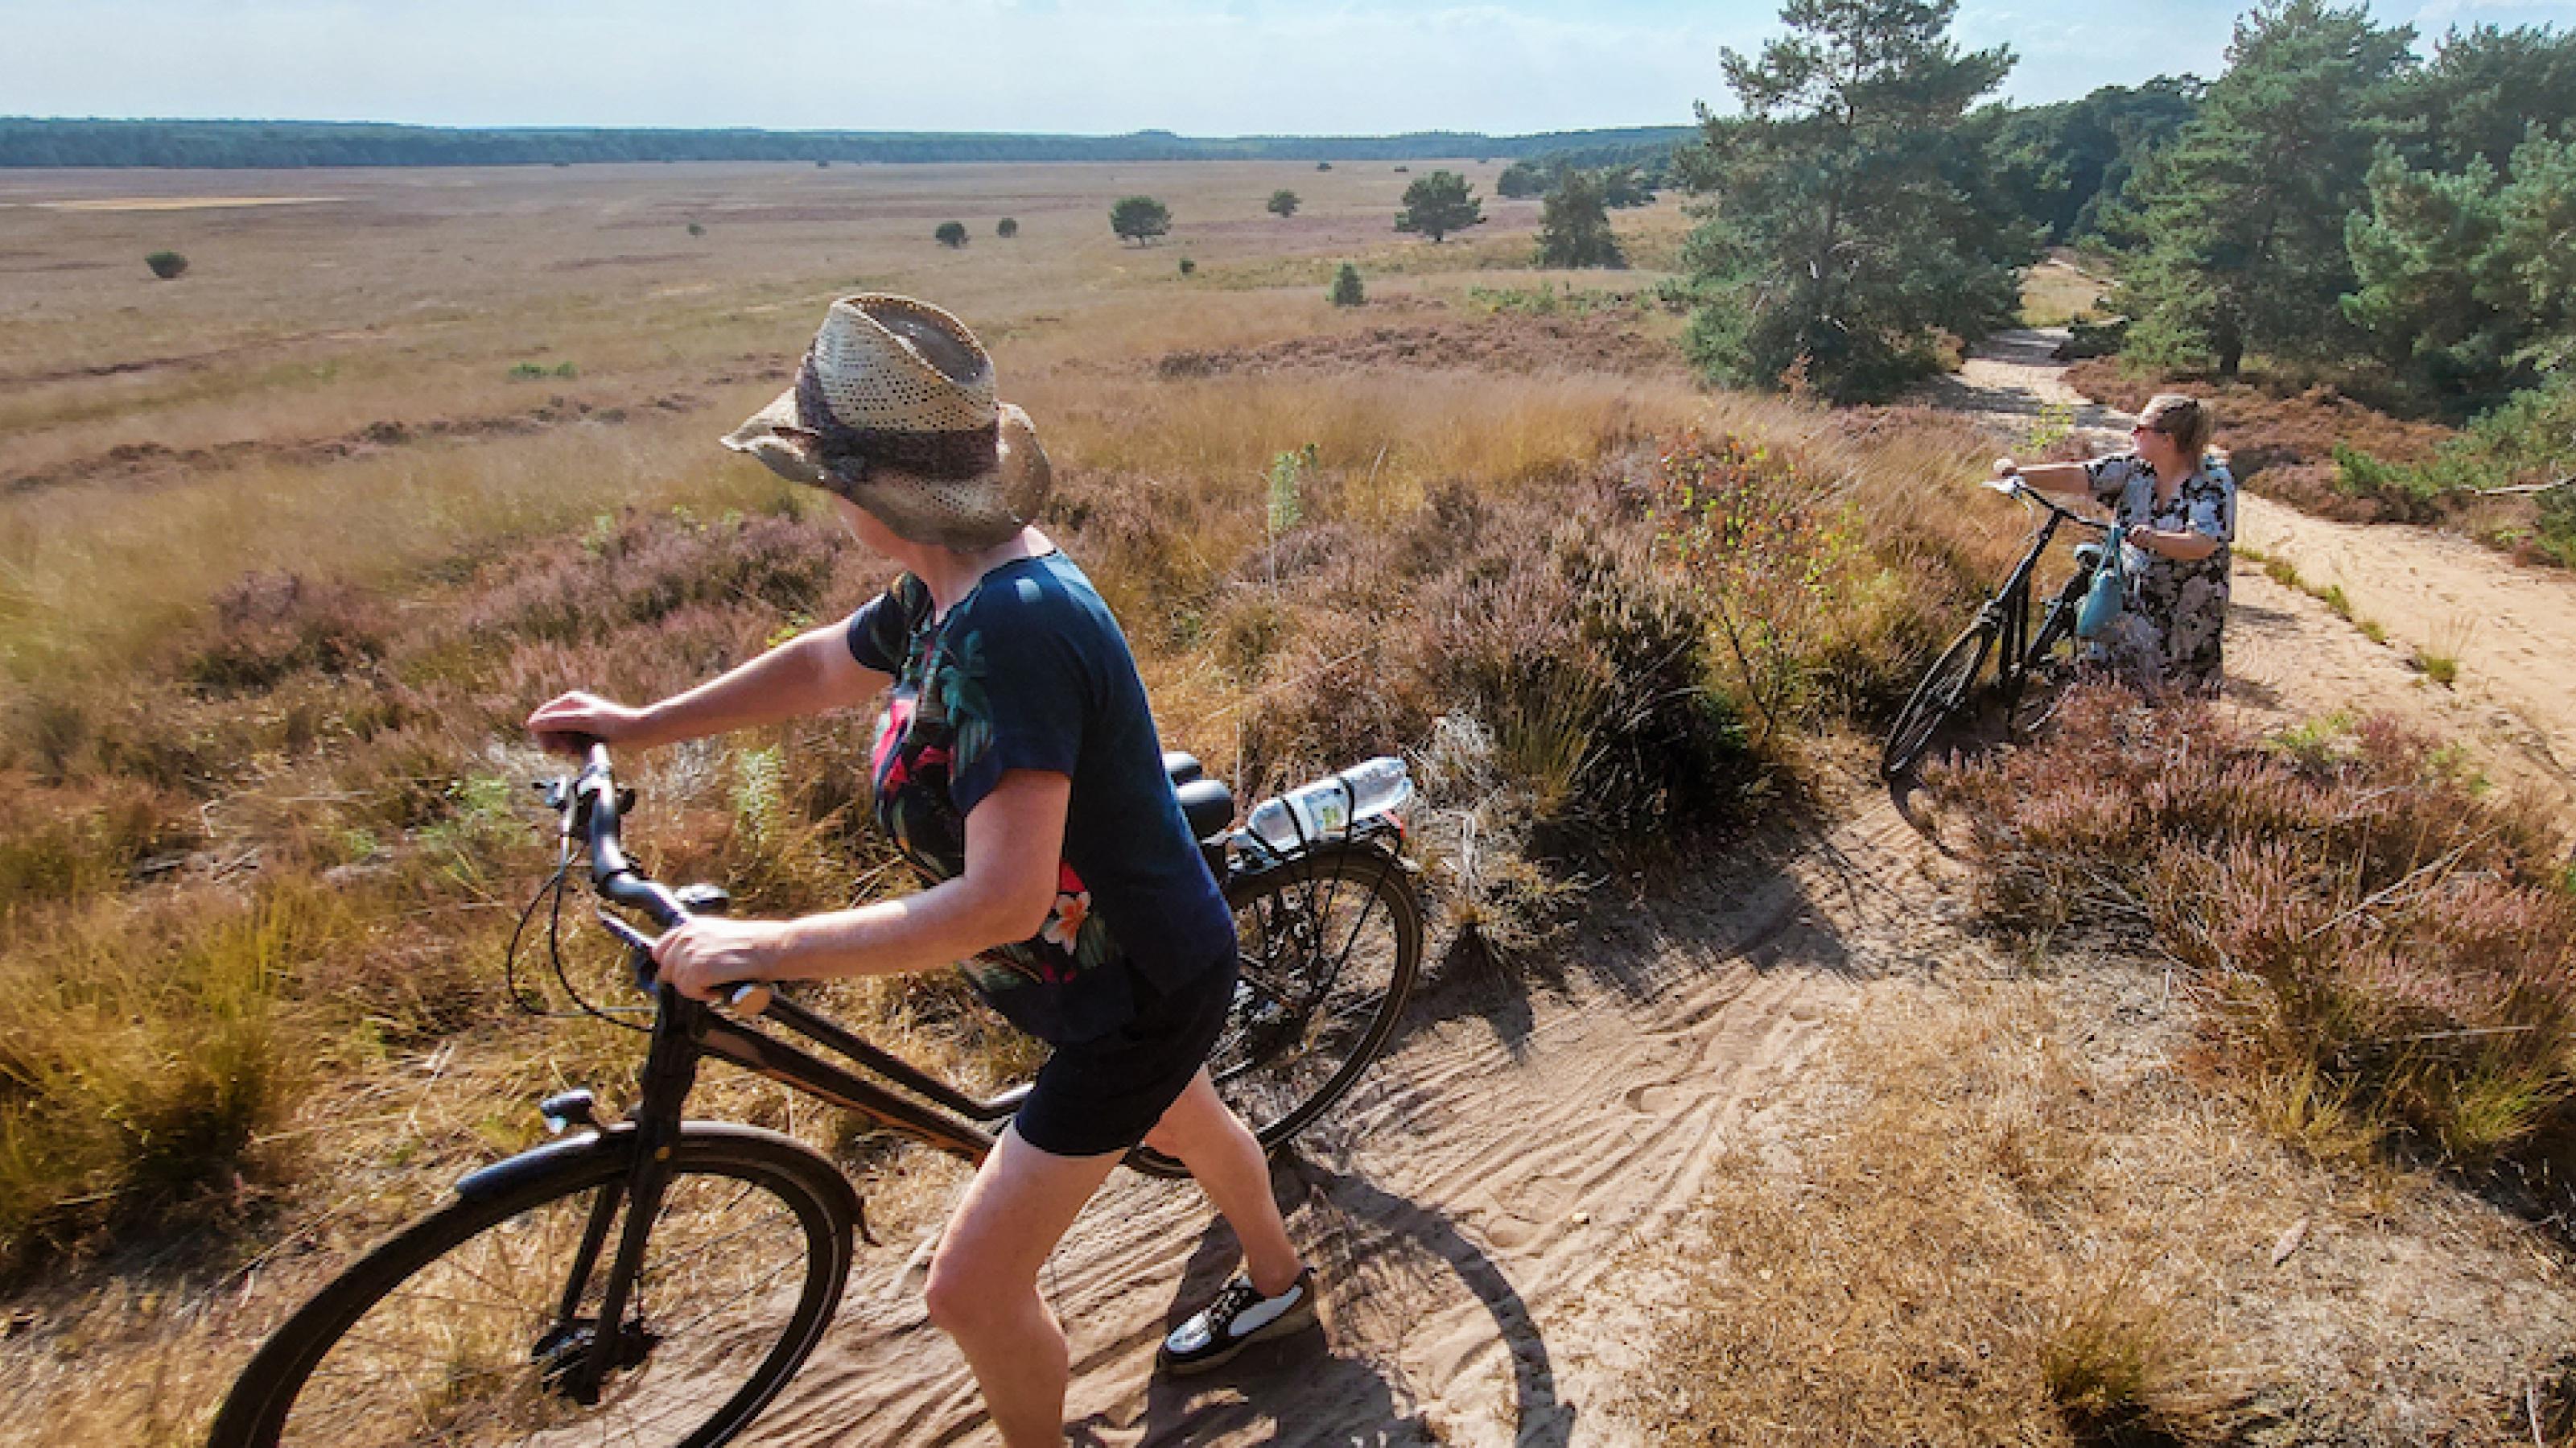 Zwei Radfahrerinnen touren durch die trockene Landschaft des niederländischen Naturschutzparks Velouwe.